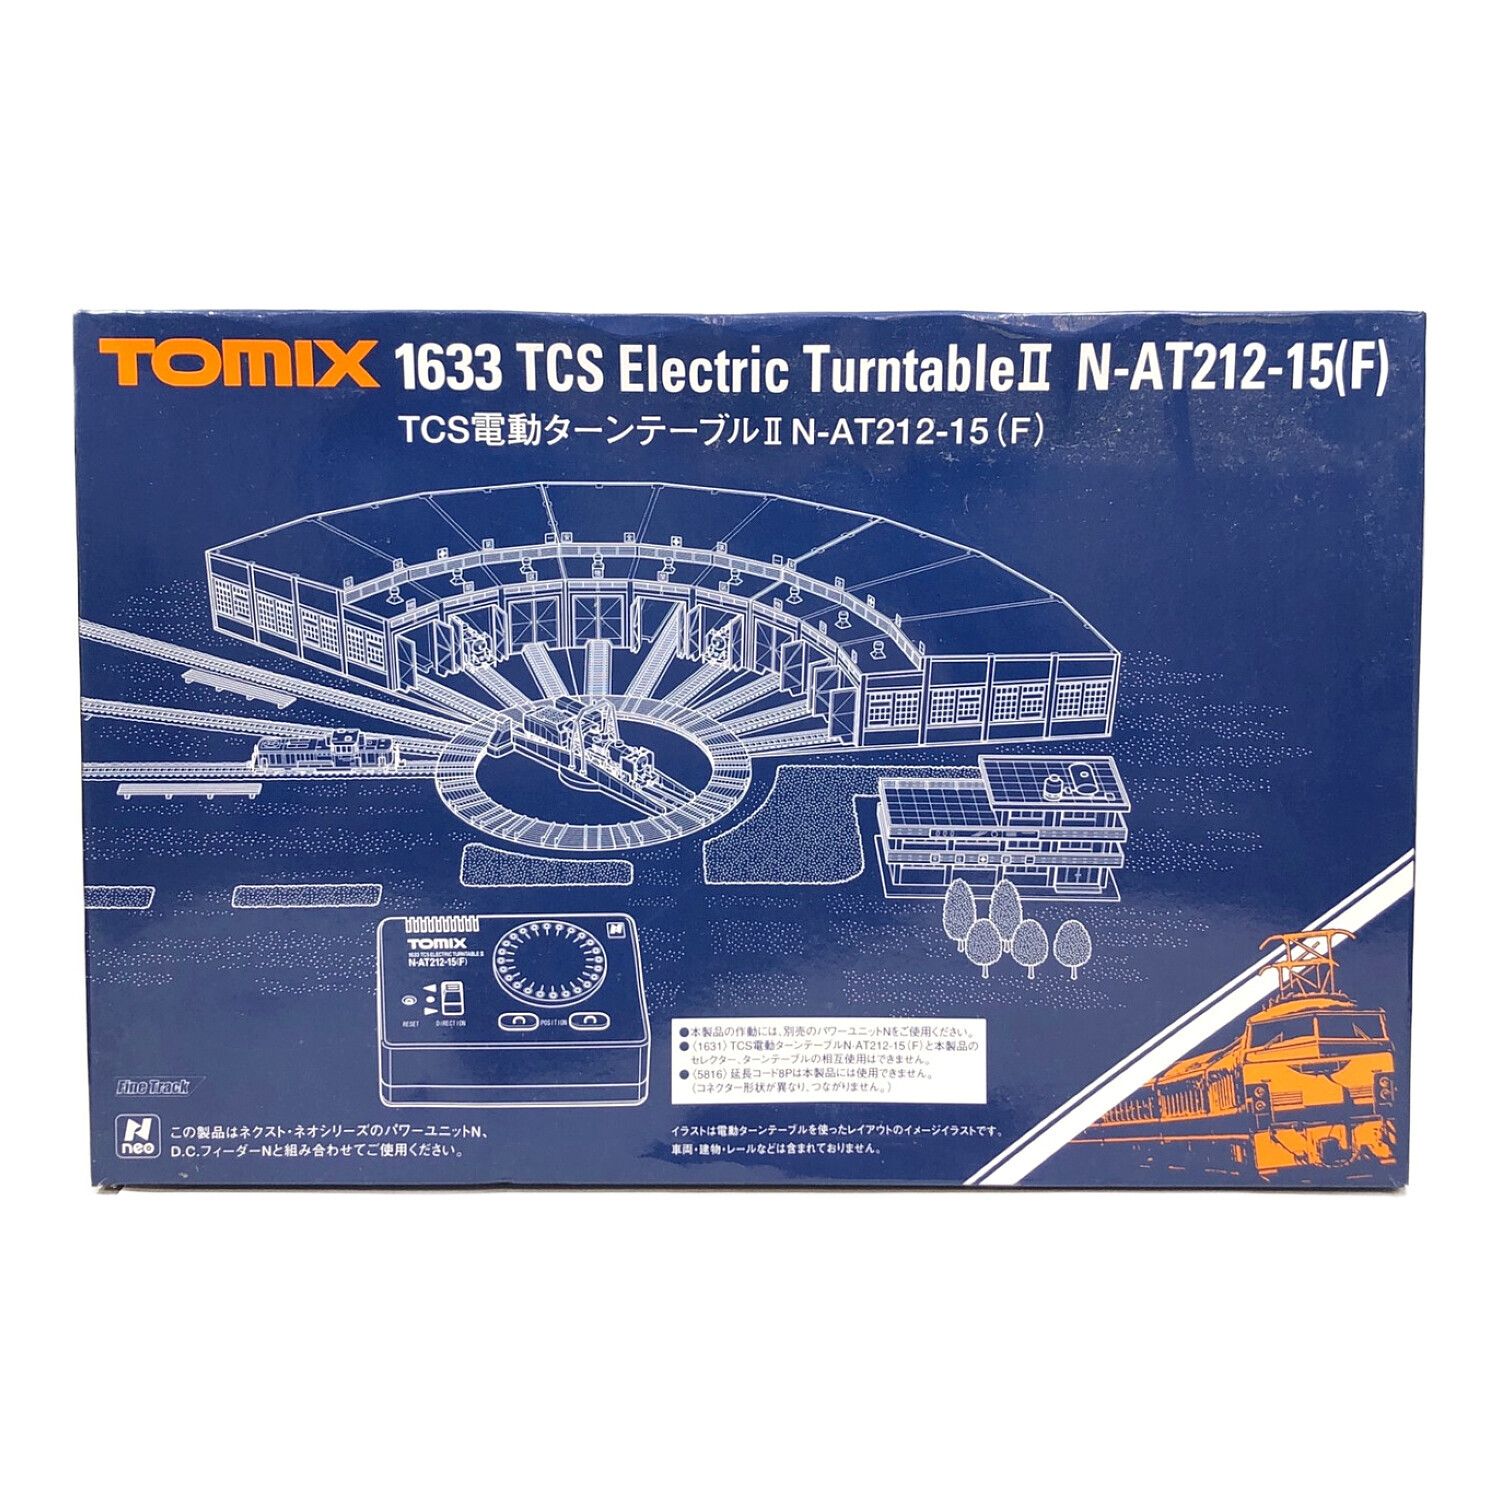 種類制御機器アクセサリーTOMIX 1633 TCS電動ターンテーブルII N-AT212-15(F)